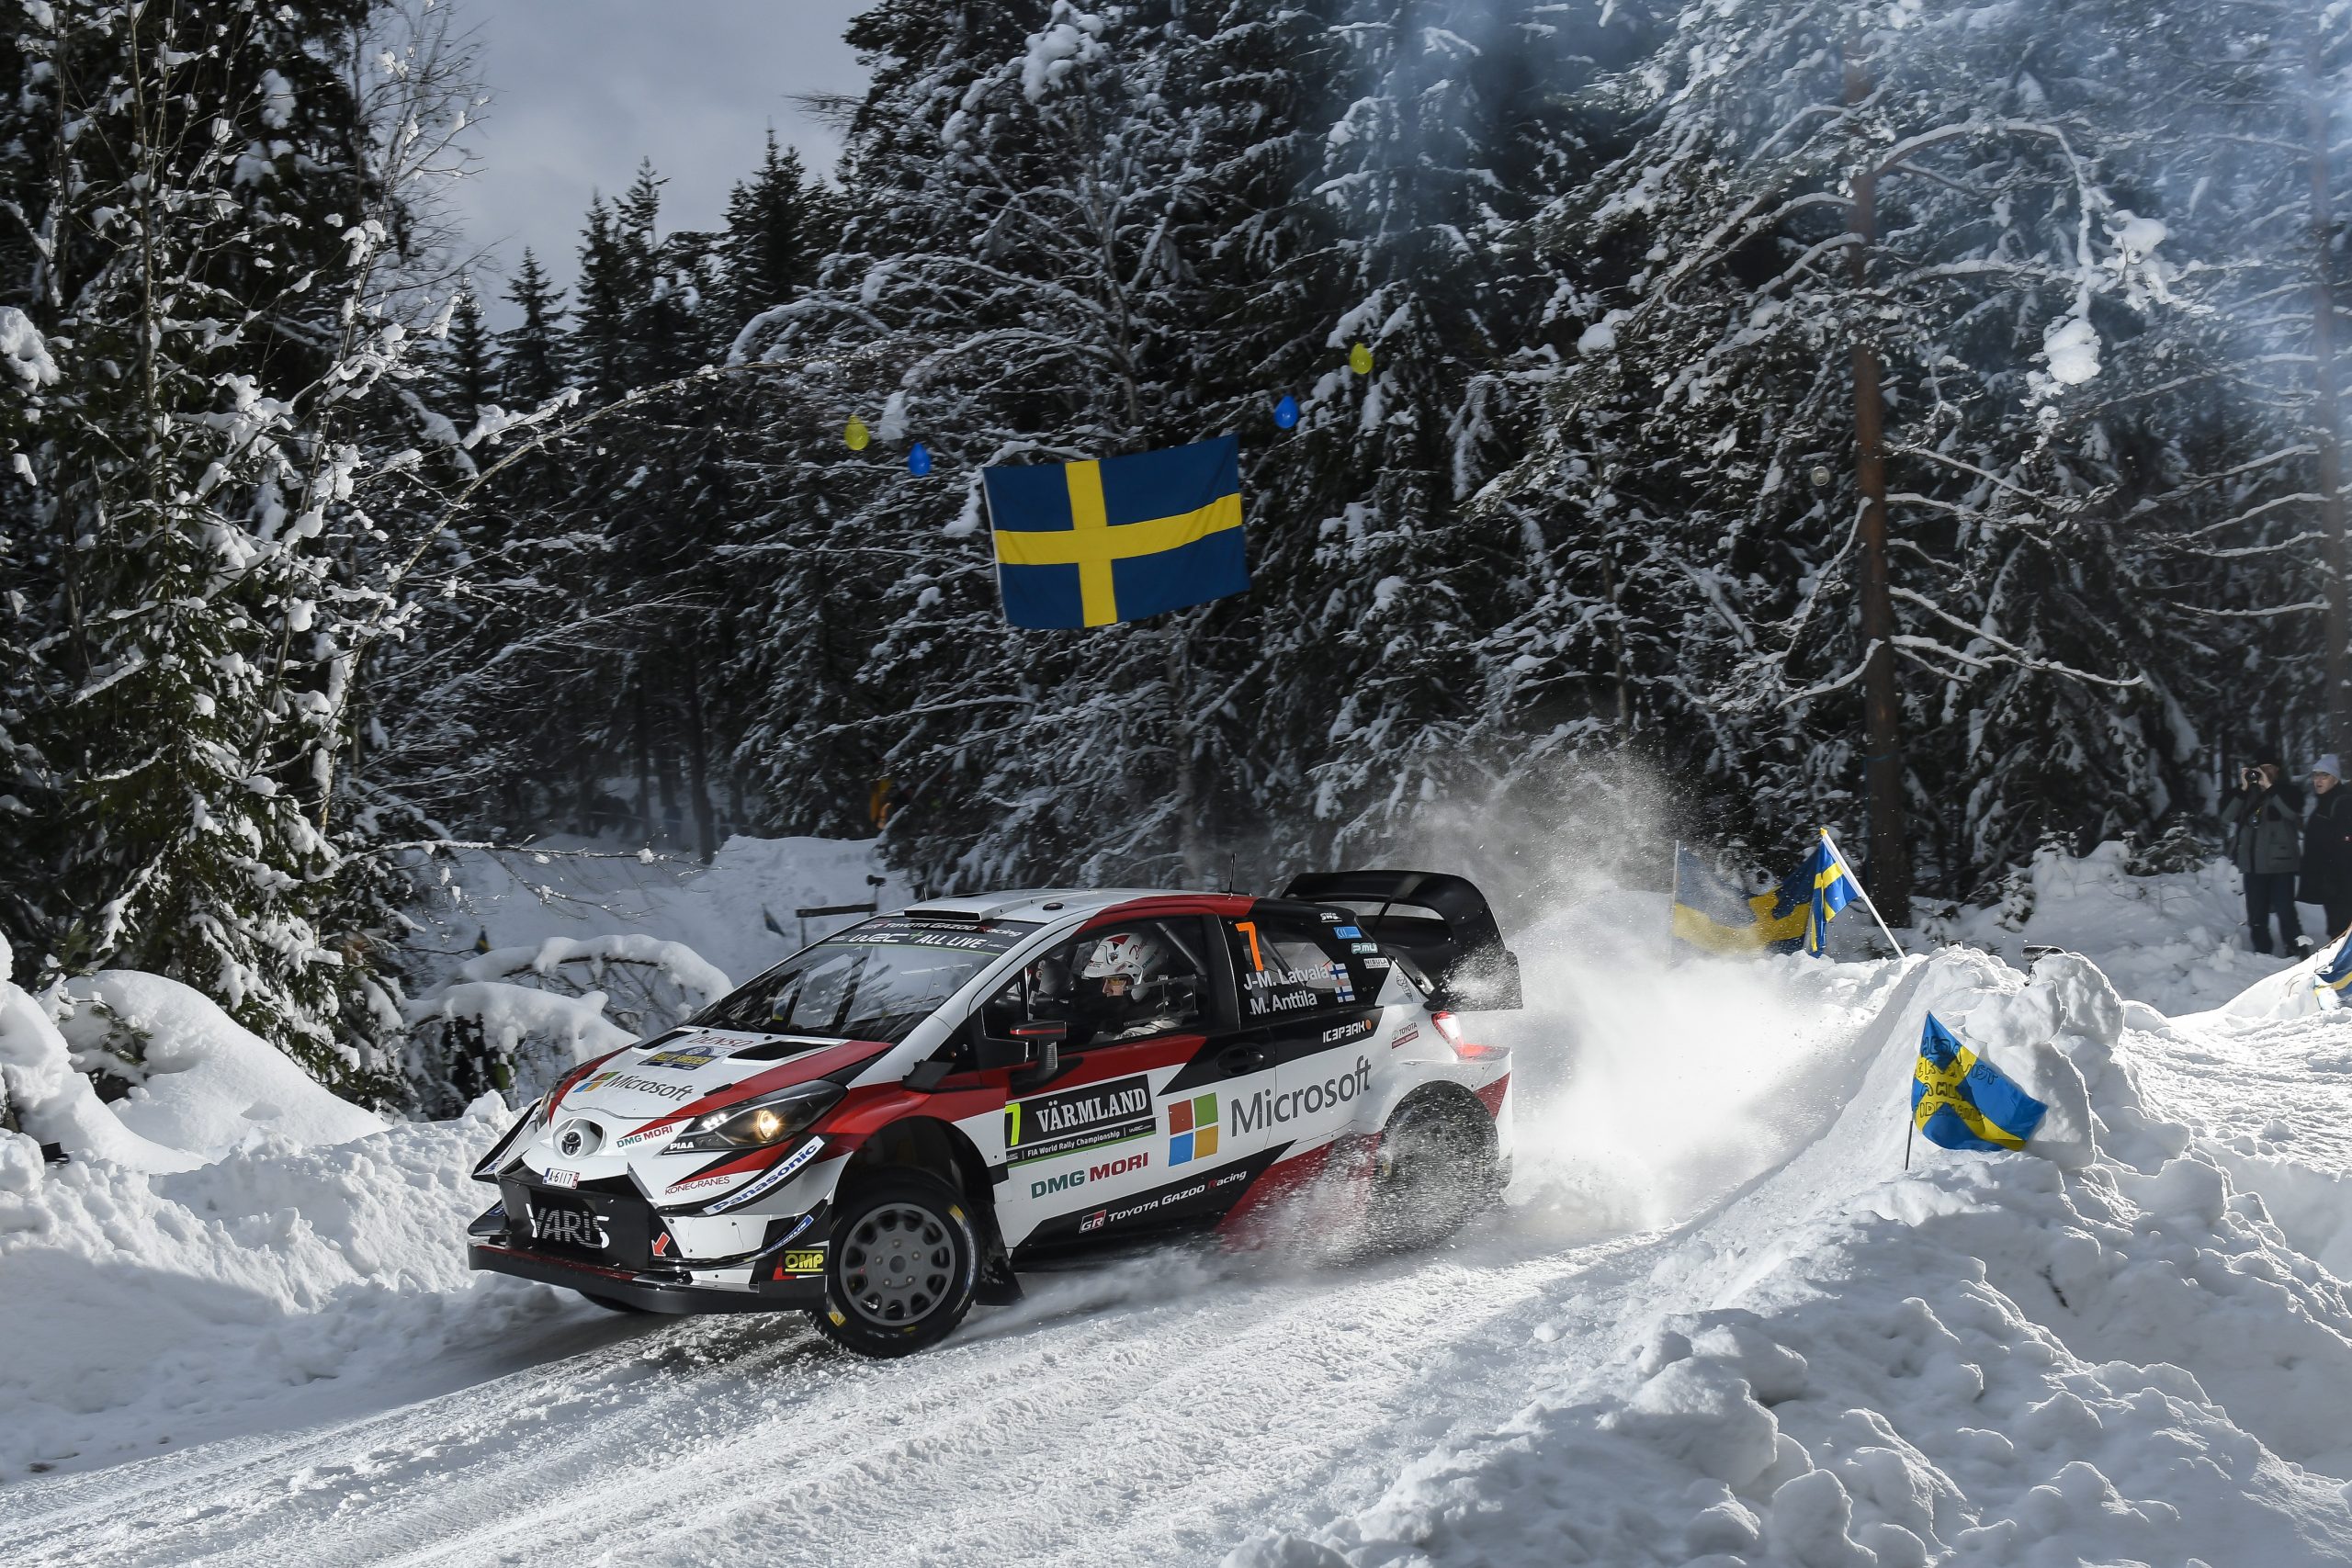 Datumet klart för Rally Sweden 2022 | Rally Sweden